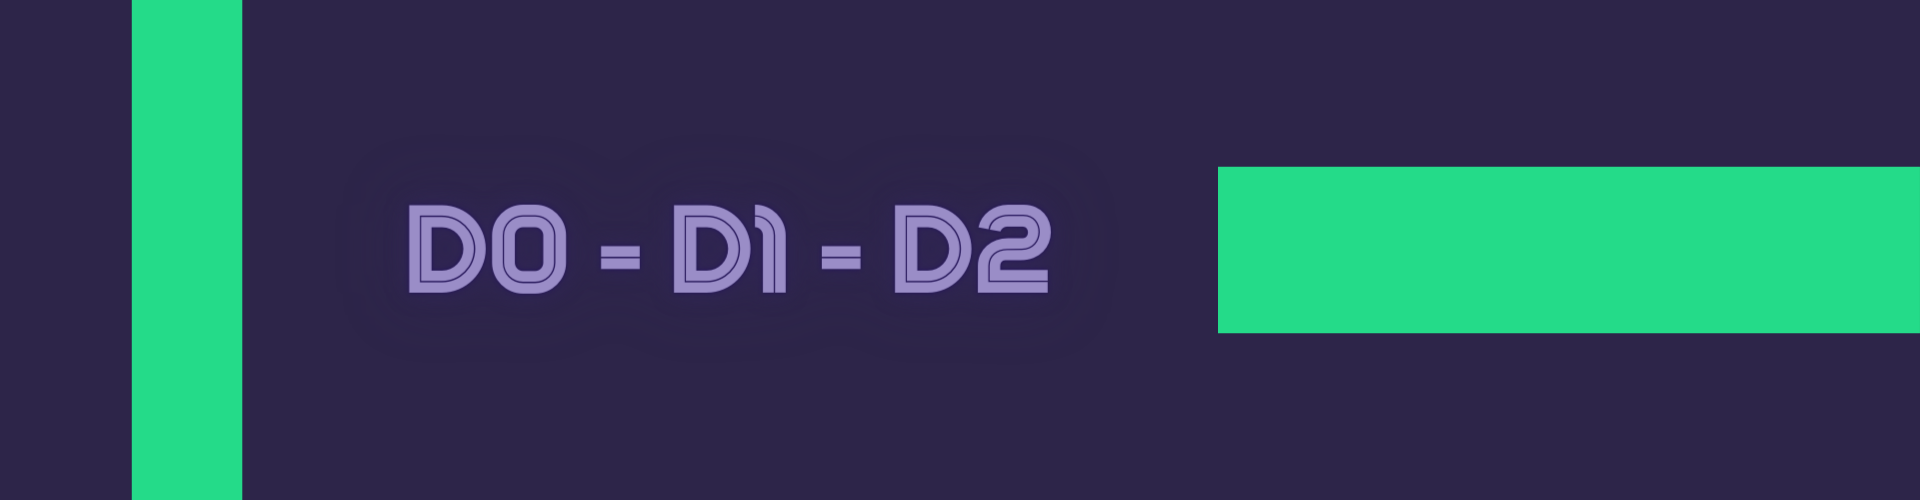 Você sabe o que significa D0, D1 ou D2 em um pagamento internacional?